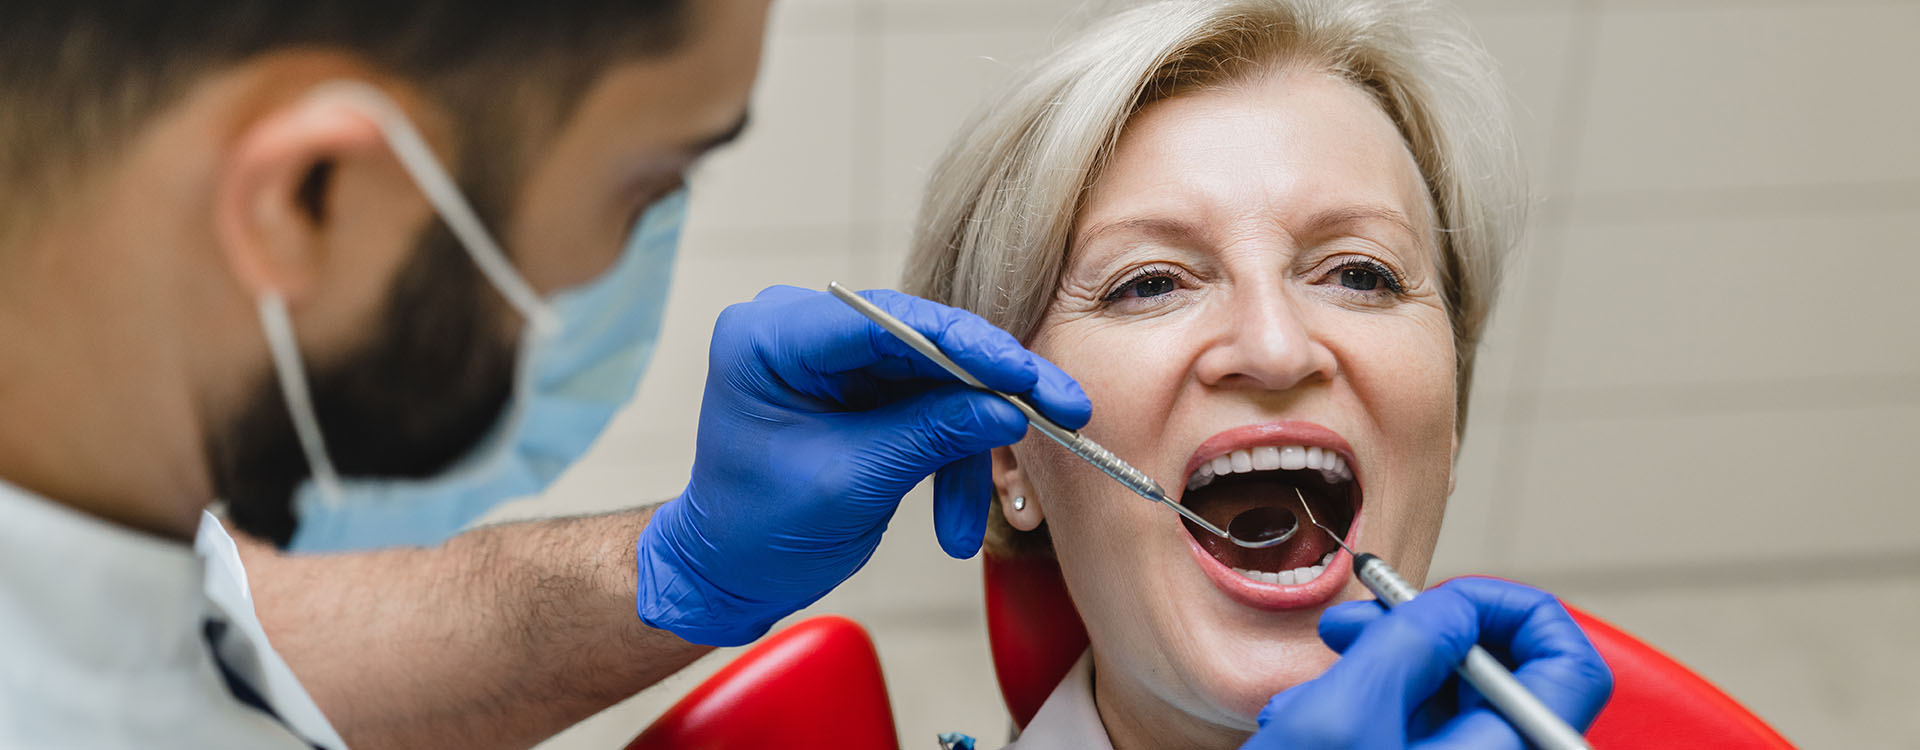 Clínica Dental Andrea Compte, tu Centro Odontológico especializado. Ortodoncia en Santa Magdalena. Dentista revisando la ortodoncia de la paciente.